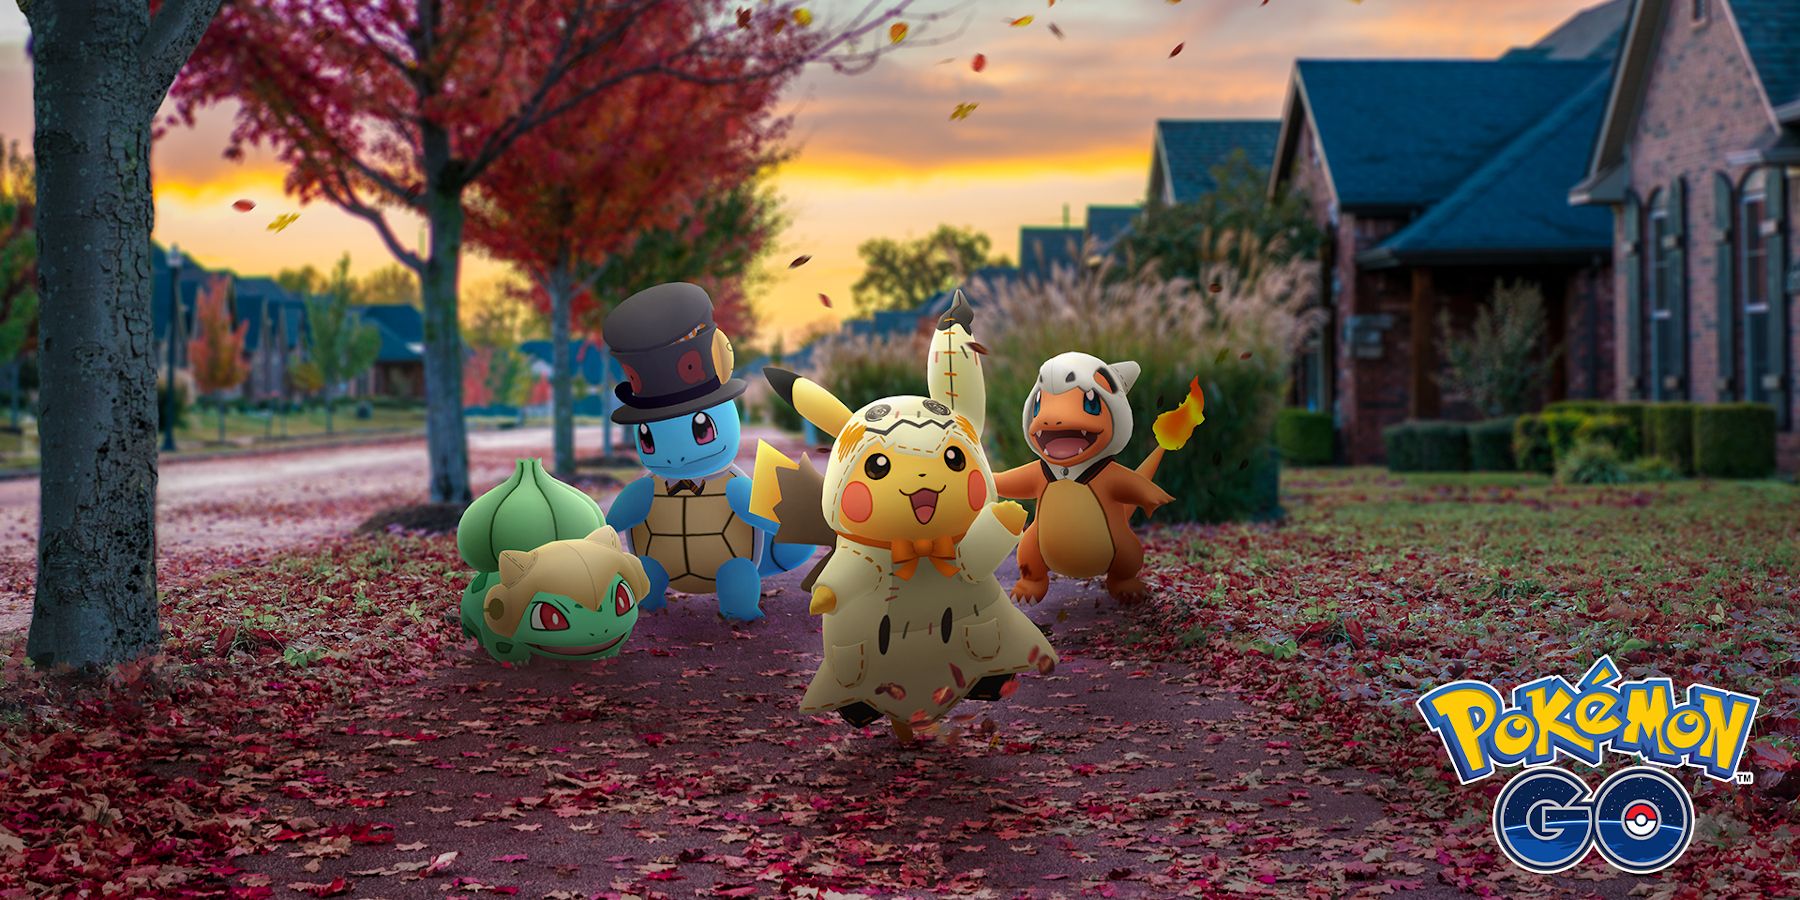 Pokémon GO Halloween 2022 - Timed Research, Mega Battles, Avatar